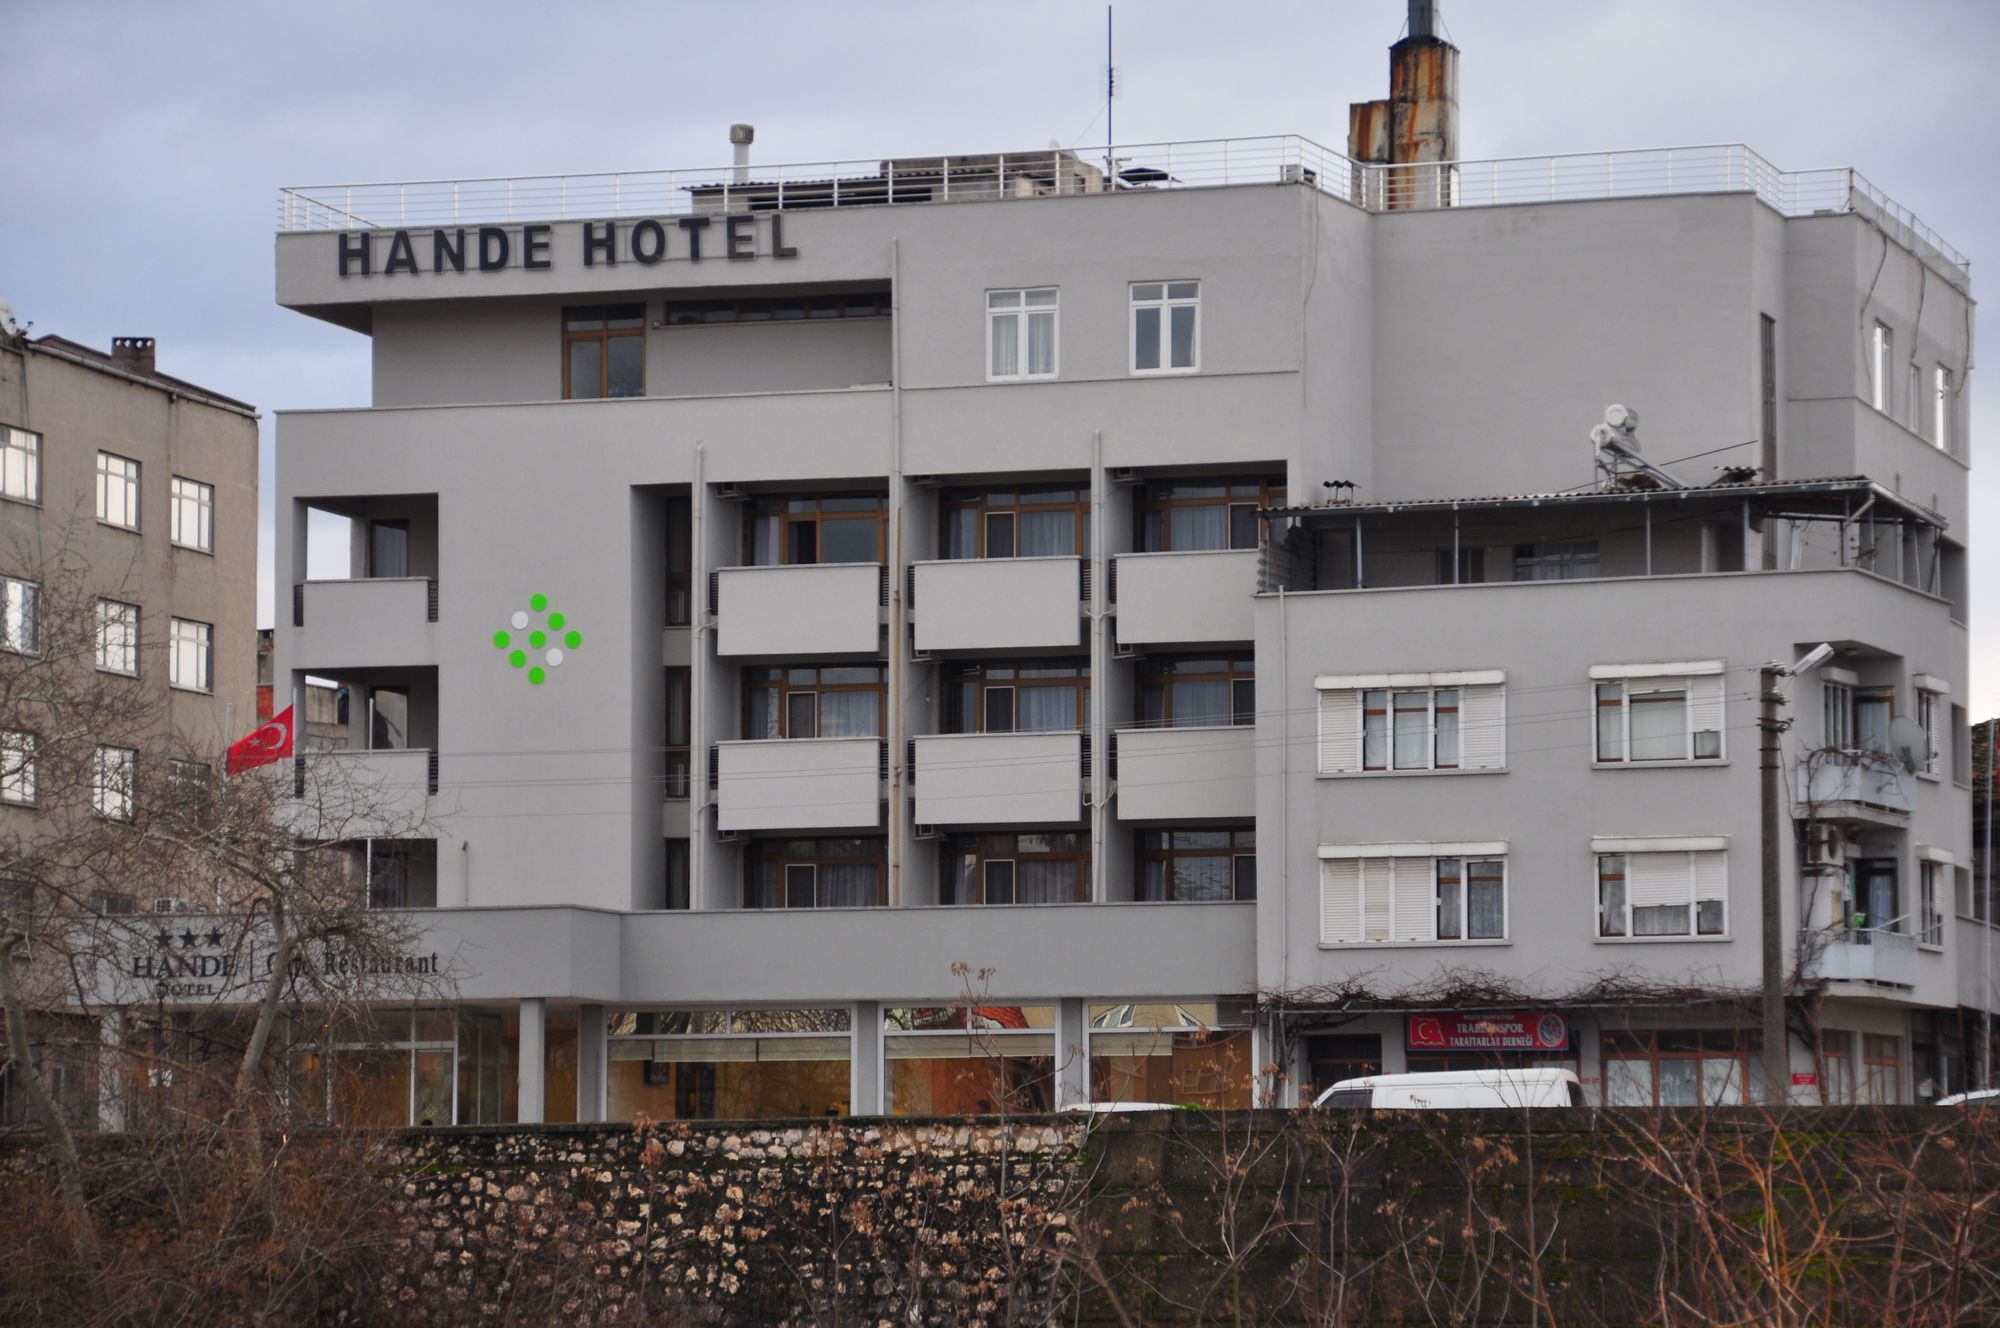 Hande Hotel